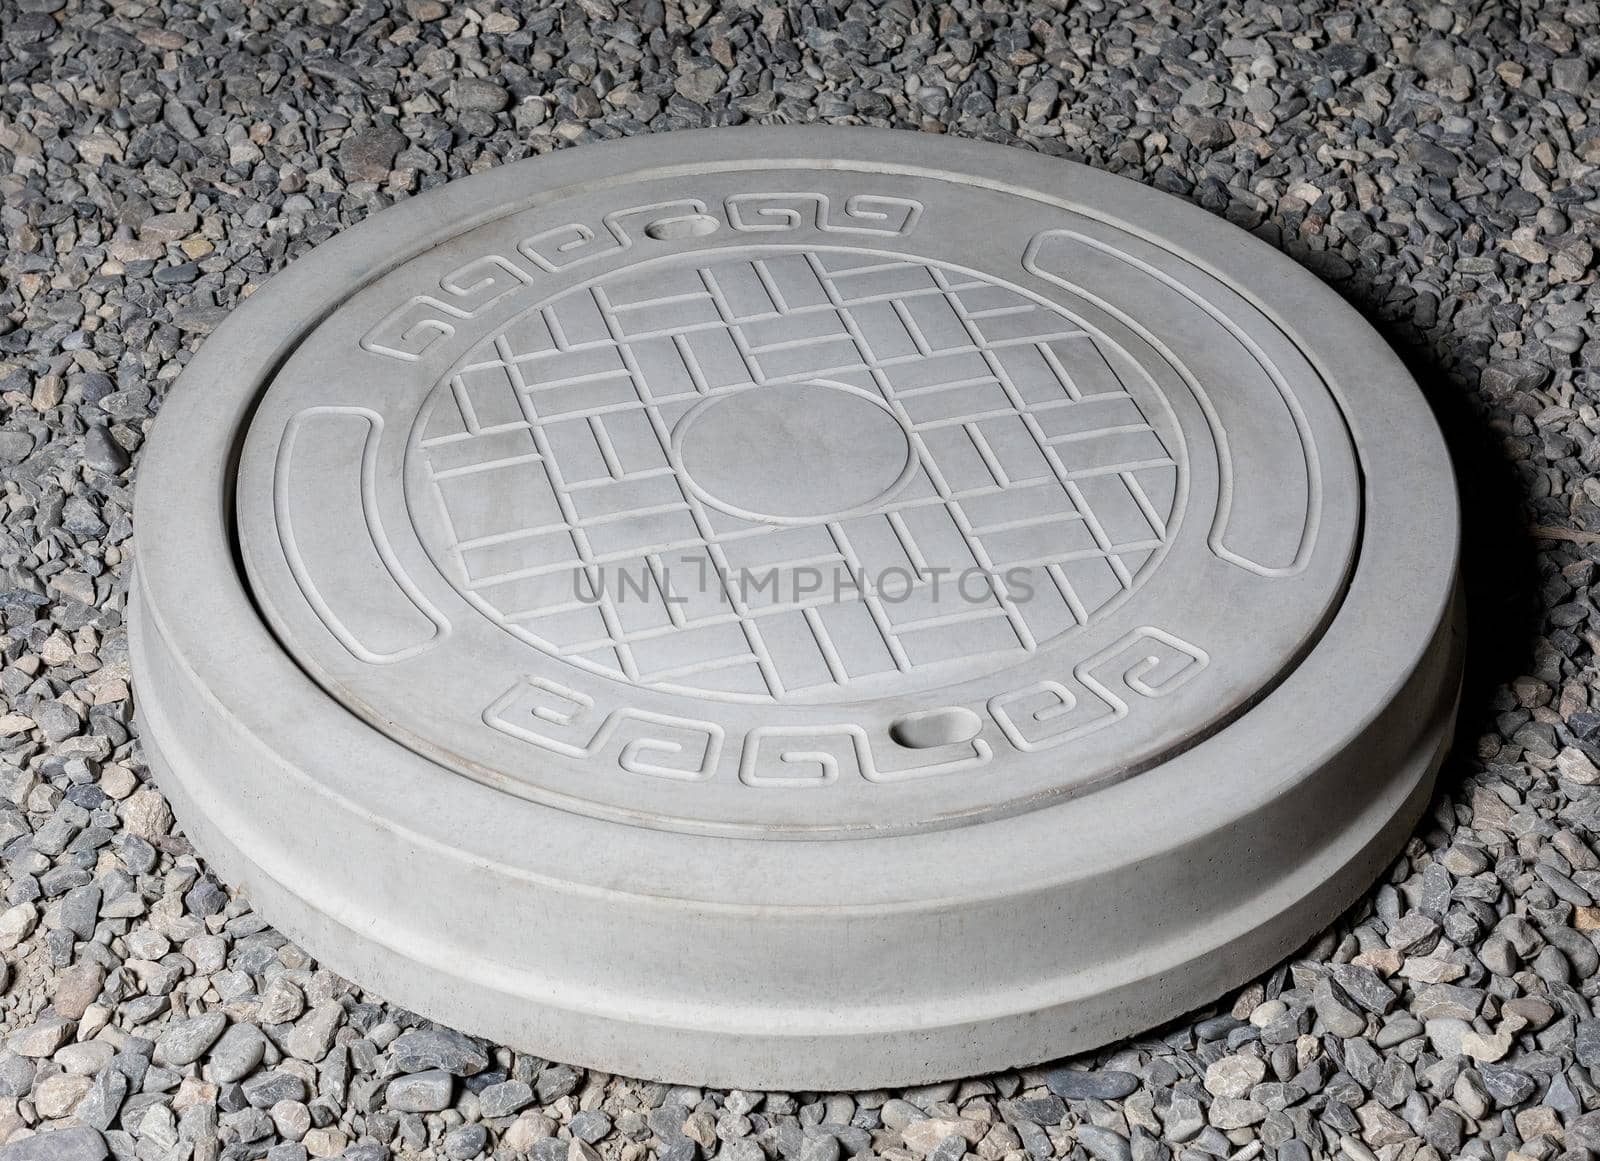 Plaster graceful stone manhole shape on the ground